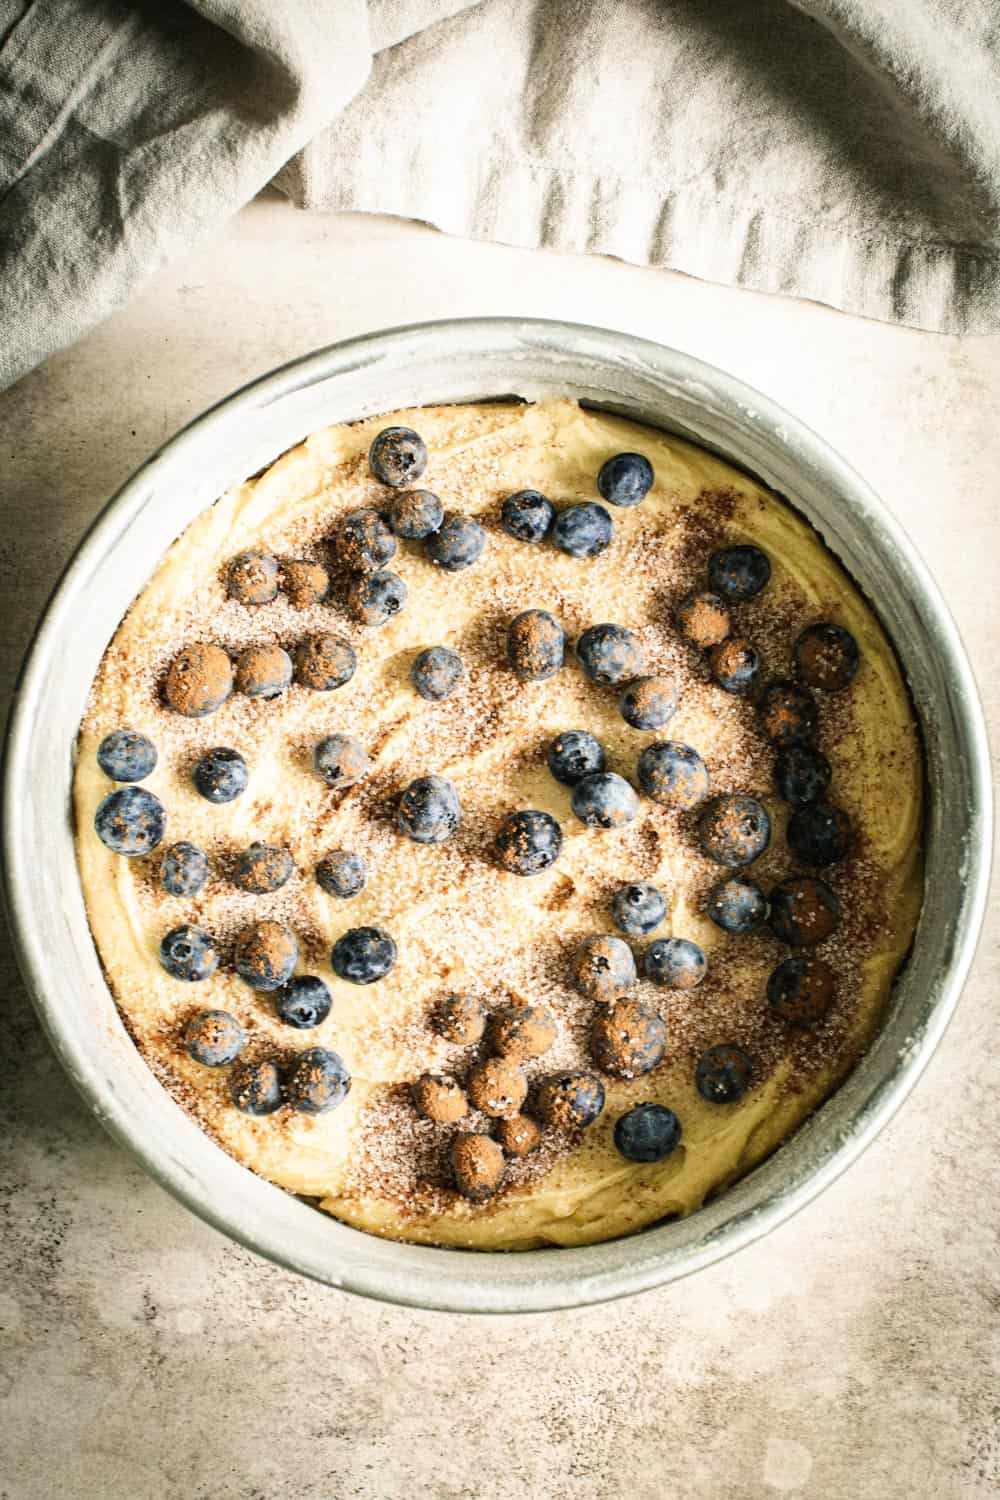 Blueberry torte batter in cake pan.